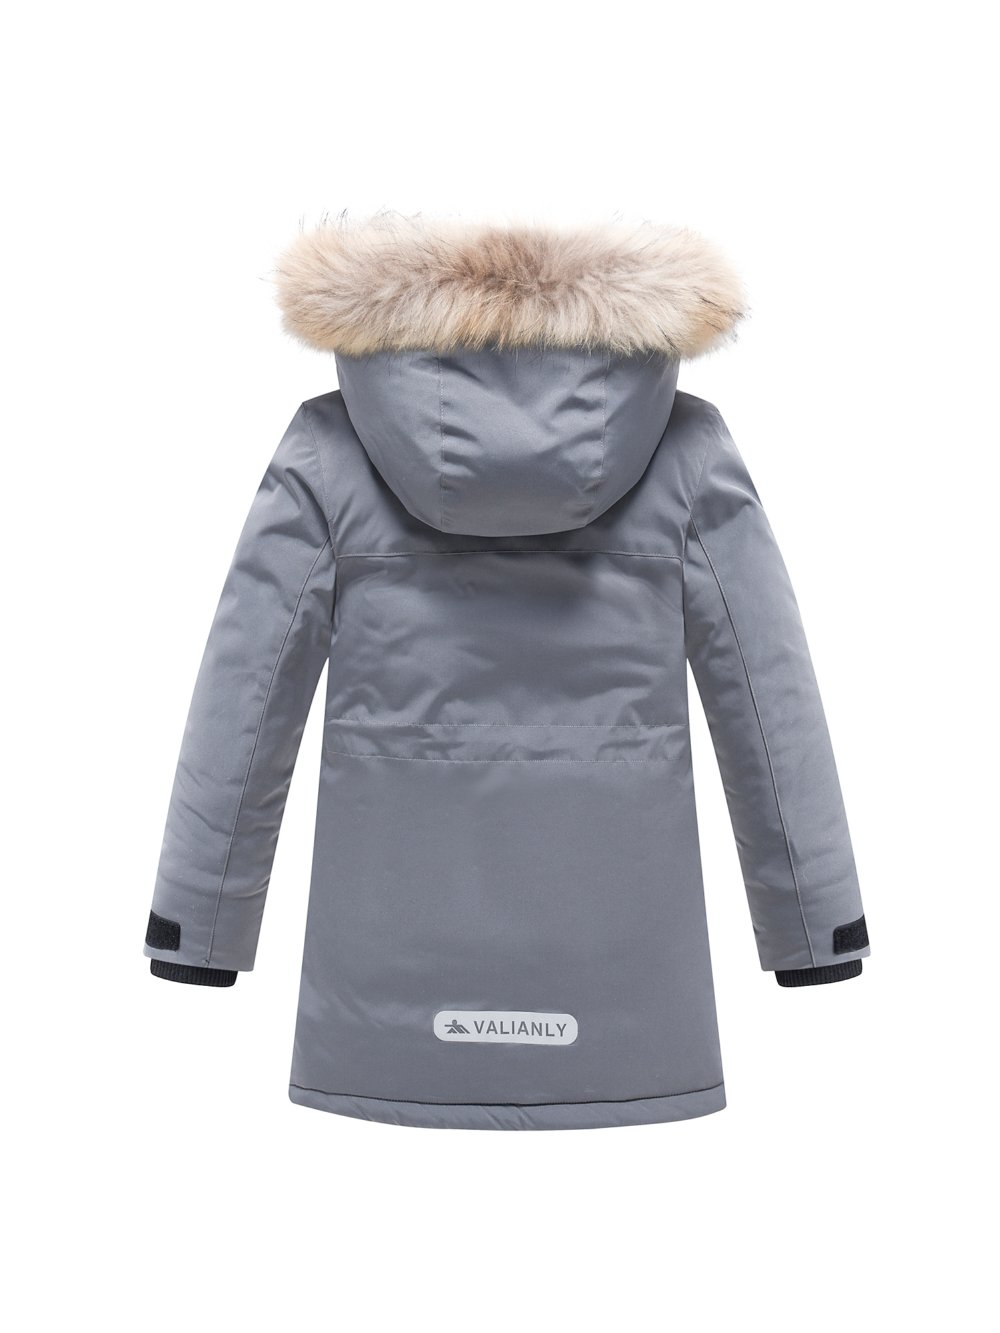 Купить куртку парку для мальчика оптом от производителя недорого в Москве 9331Sr 1